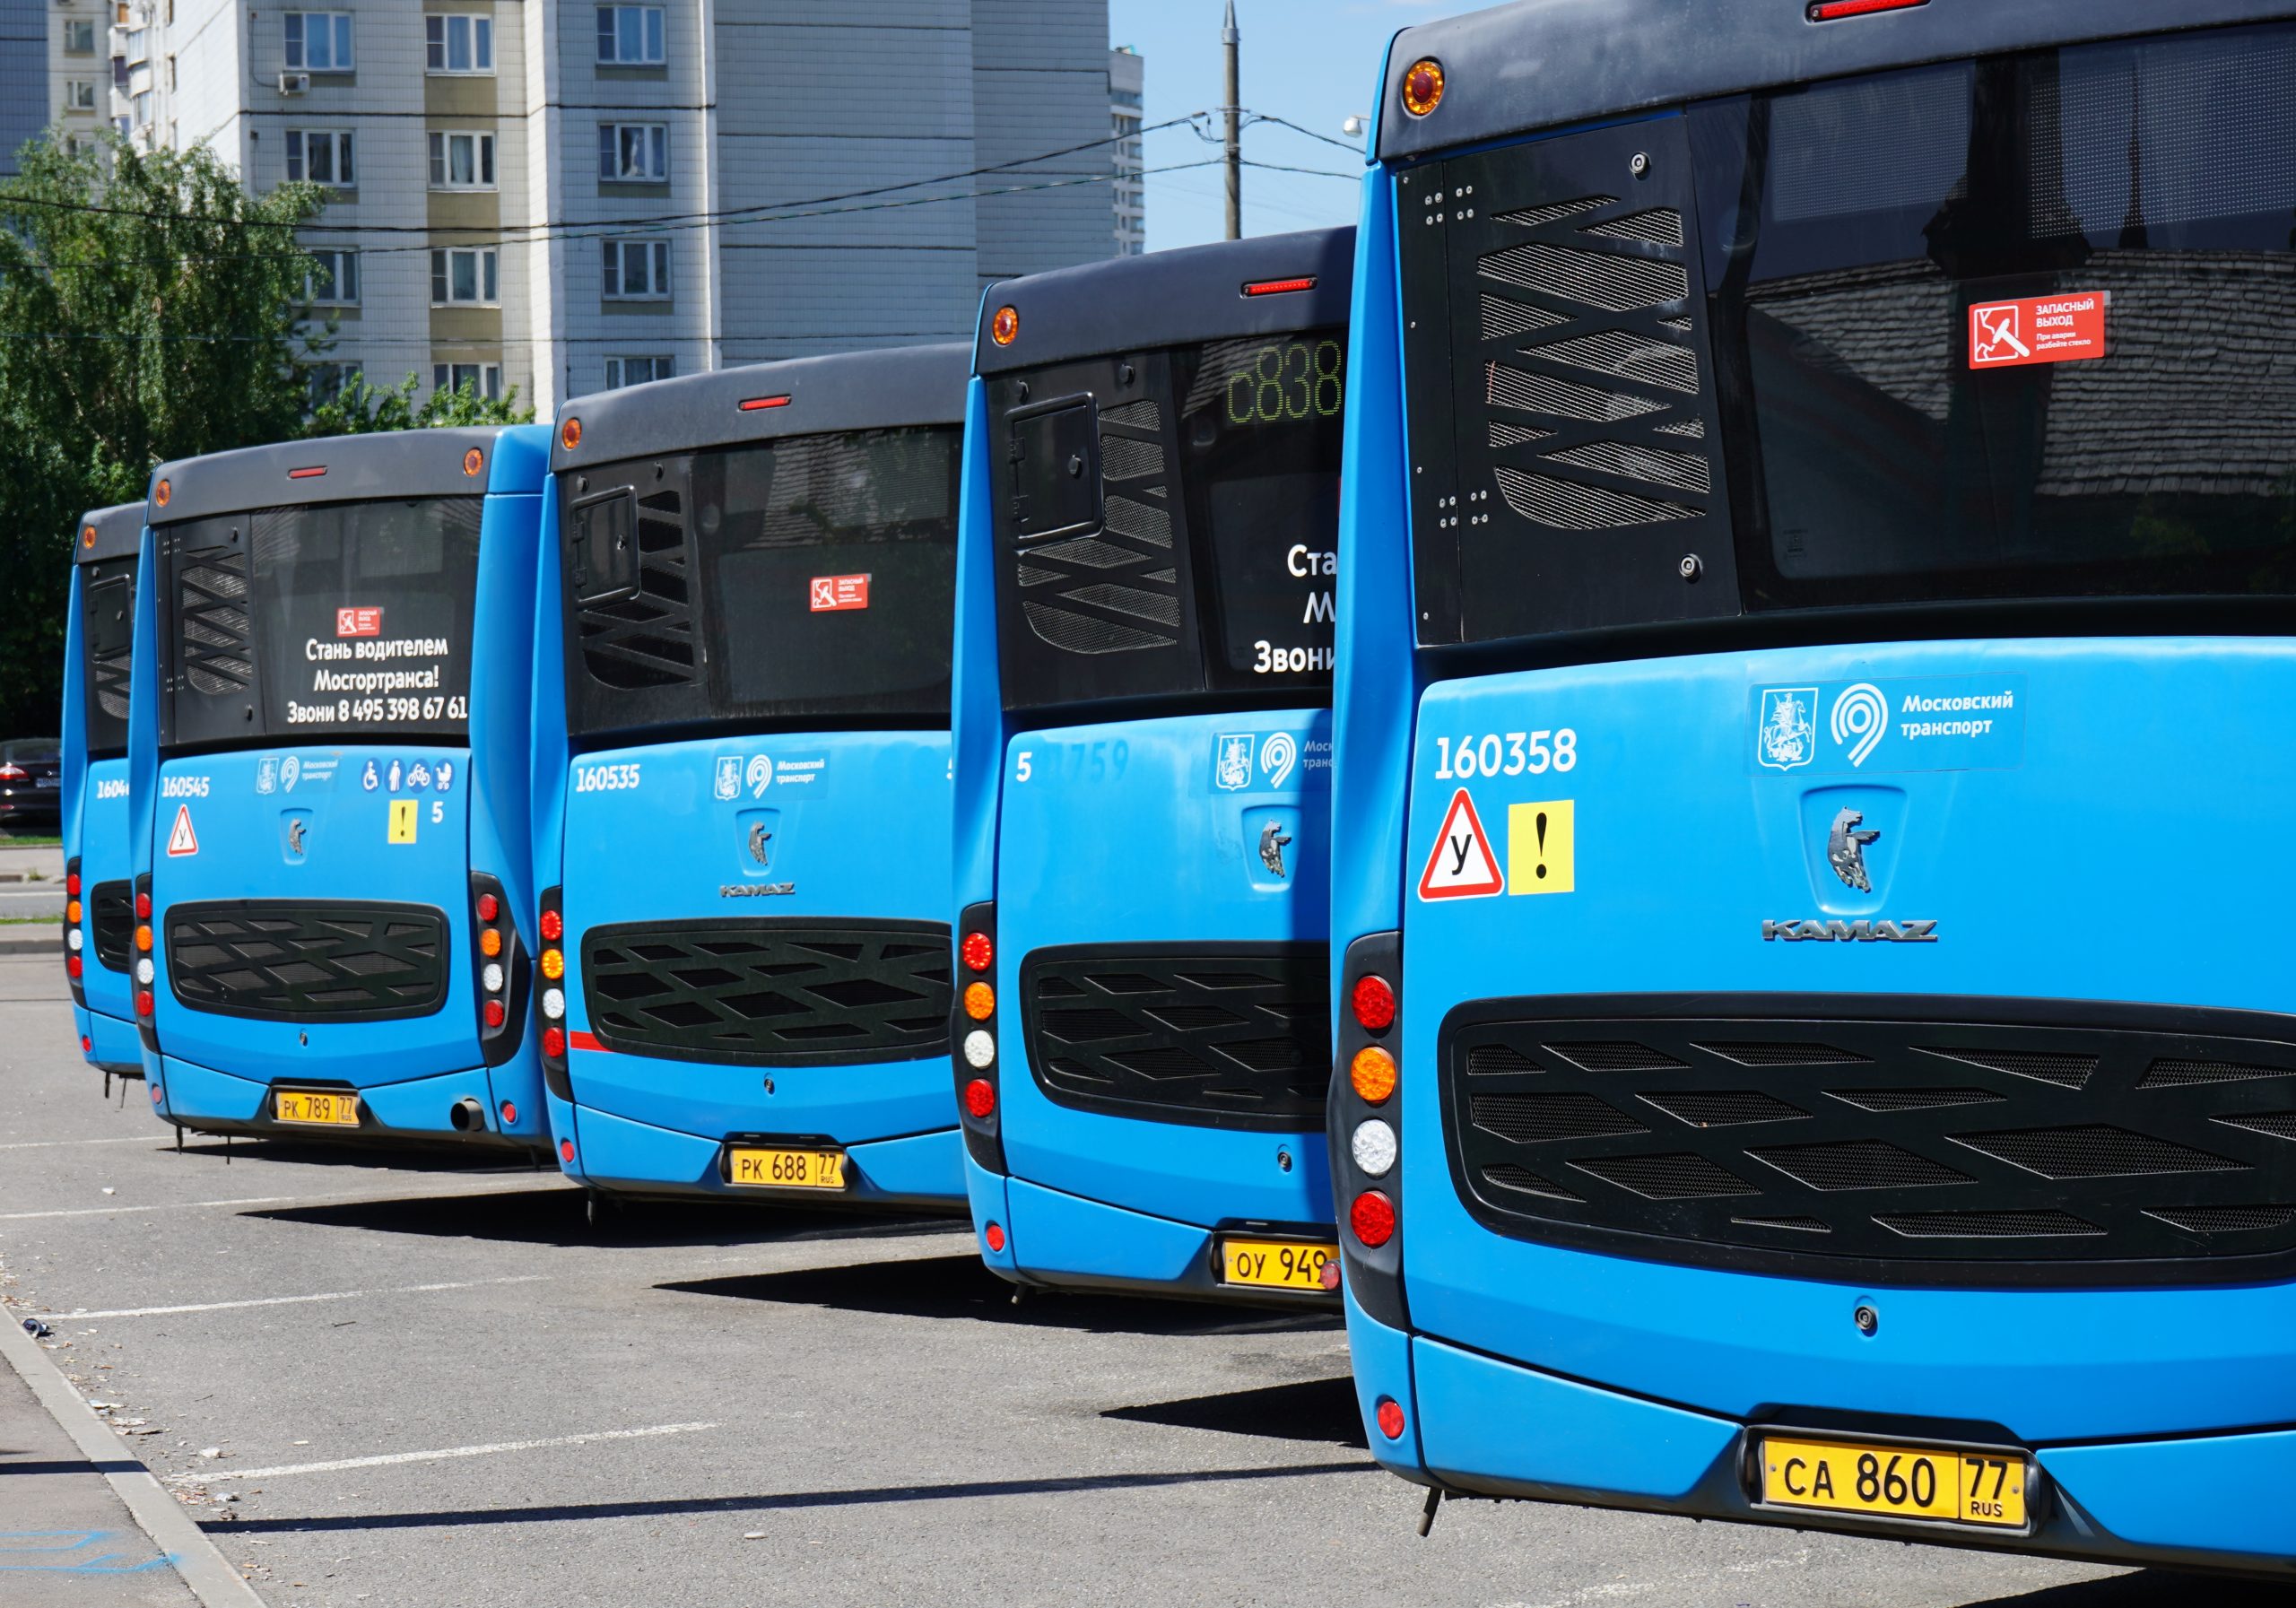 Парковки для автобусов и грузовиков стали популярными в столице